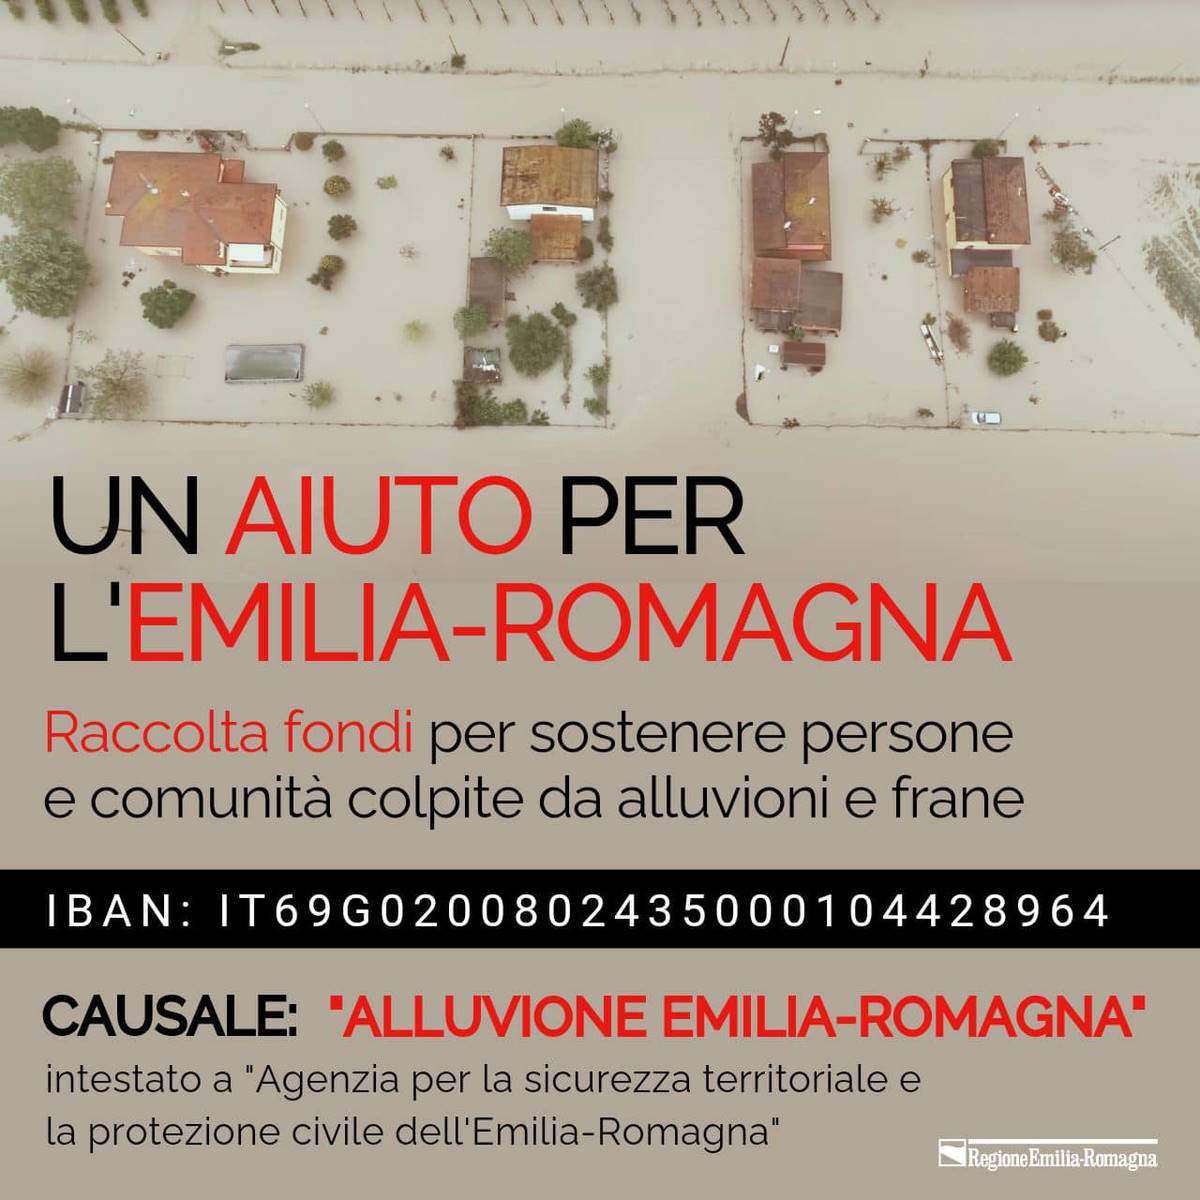 La regione Emilia-Romagna lancia una raccolta fondi per gli enormi danni provocati dall'alluvione